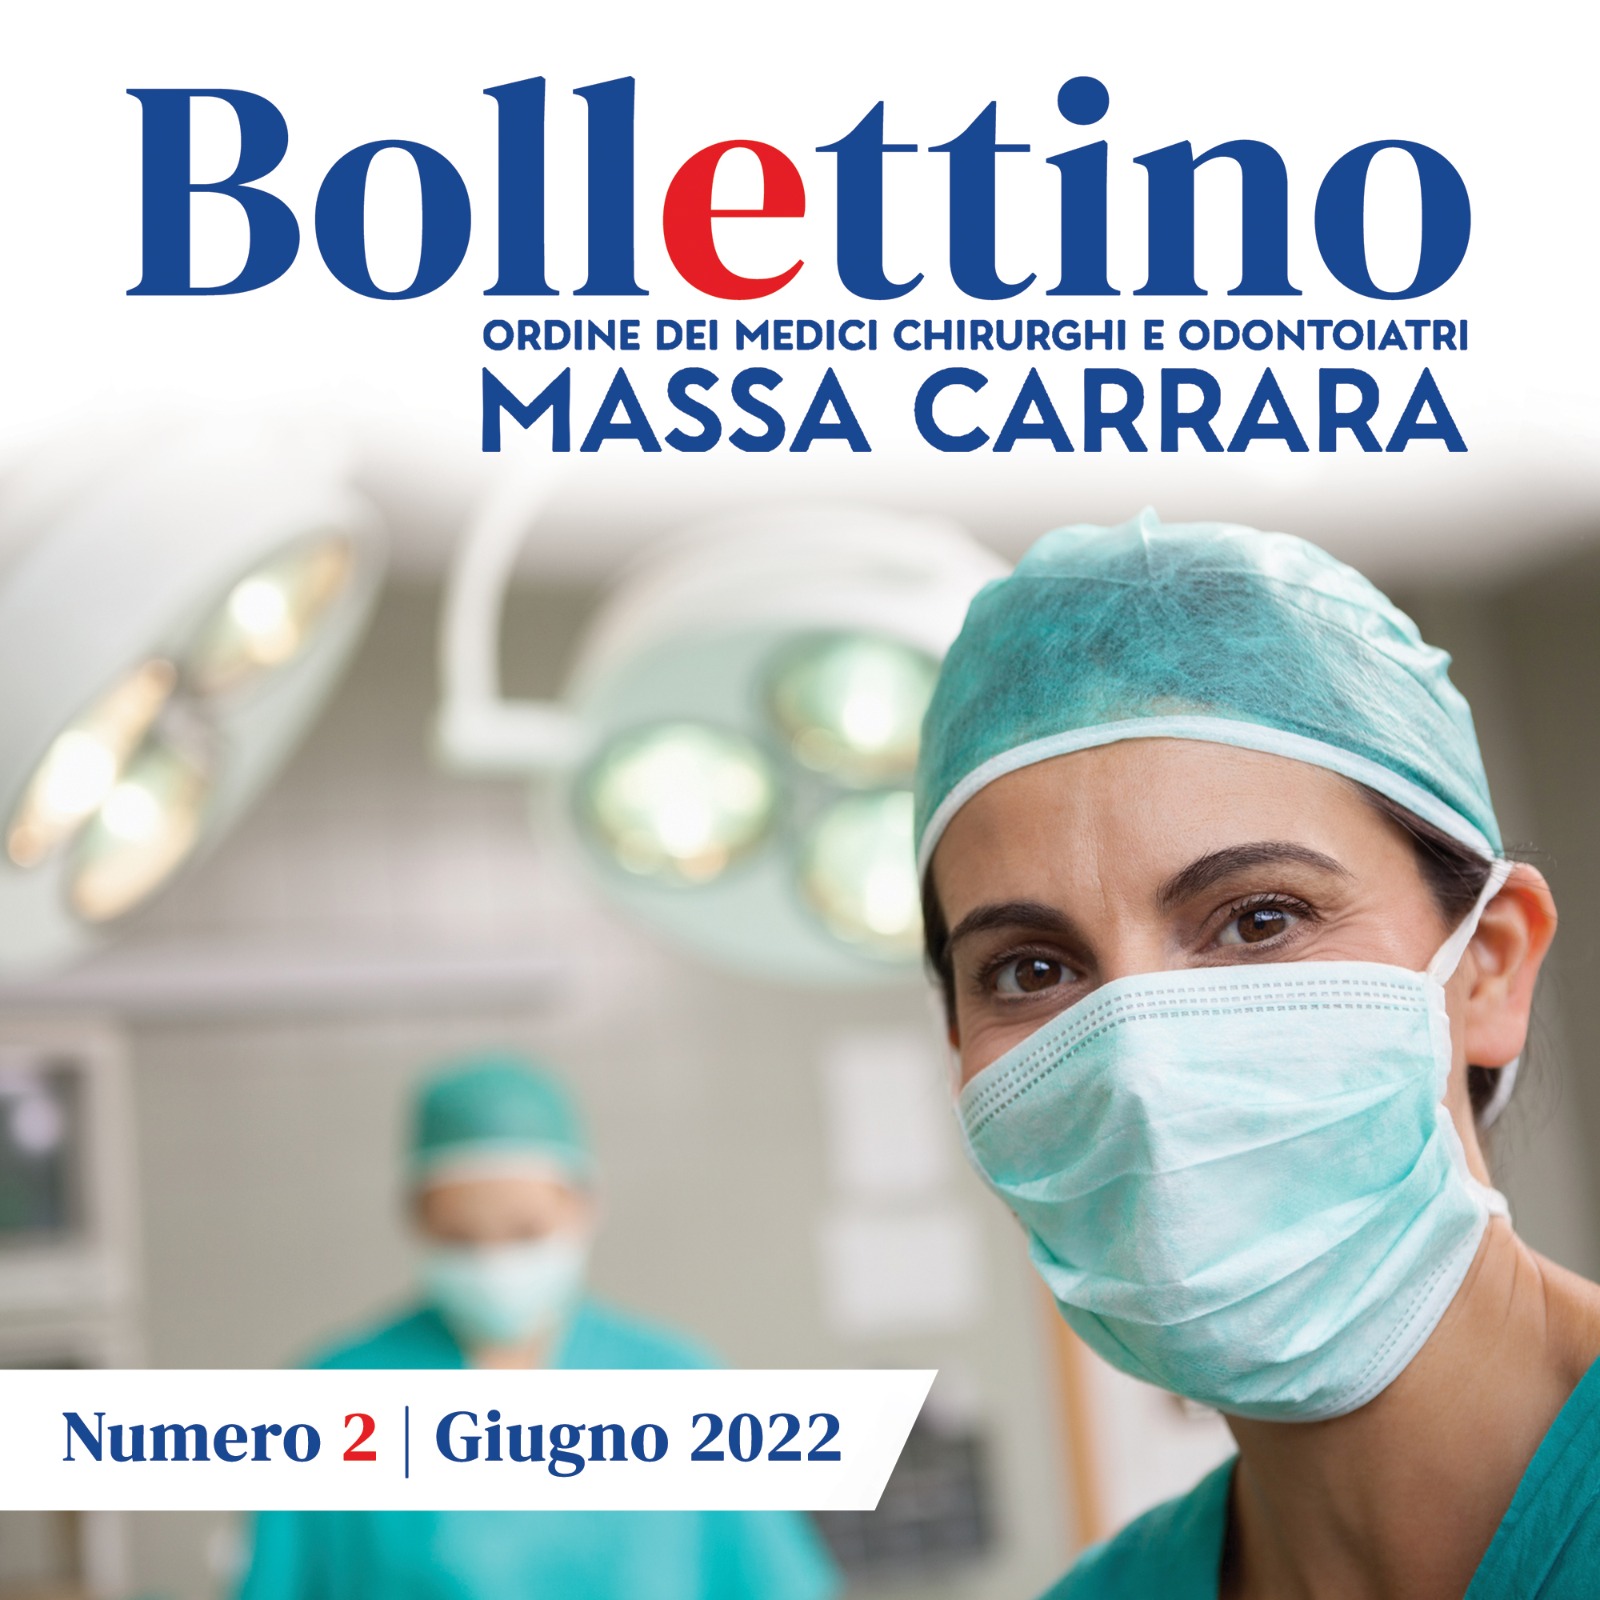 Clicca per accedere all'articolo Bollettino OMCeO - Giugno 2022